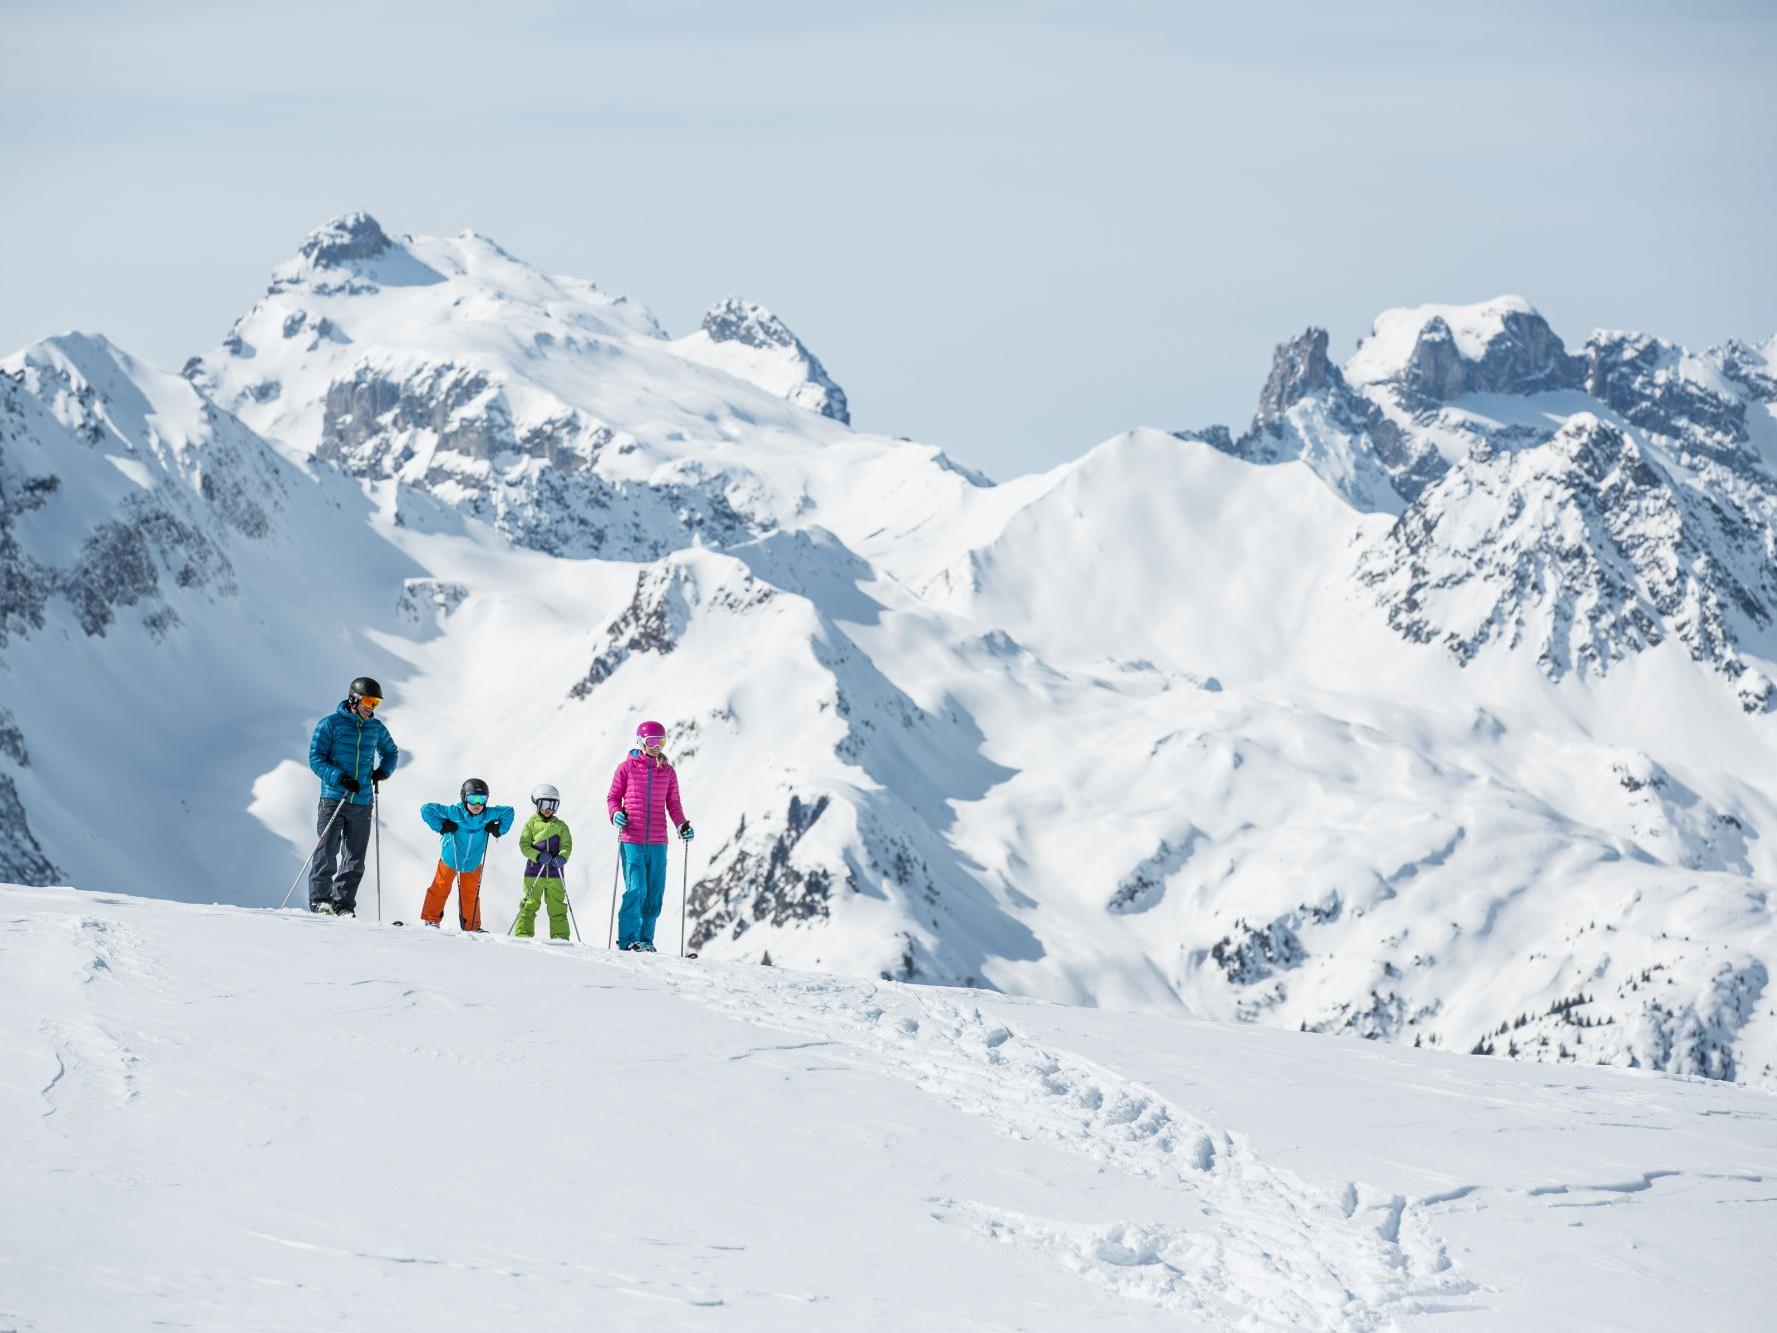 Die Aktion „Winter.Familie.Montafon“ bietet Skispass für die ganze Familie zu besonders attraktiven Preisen.